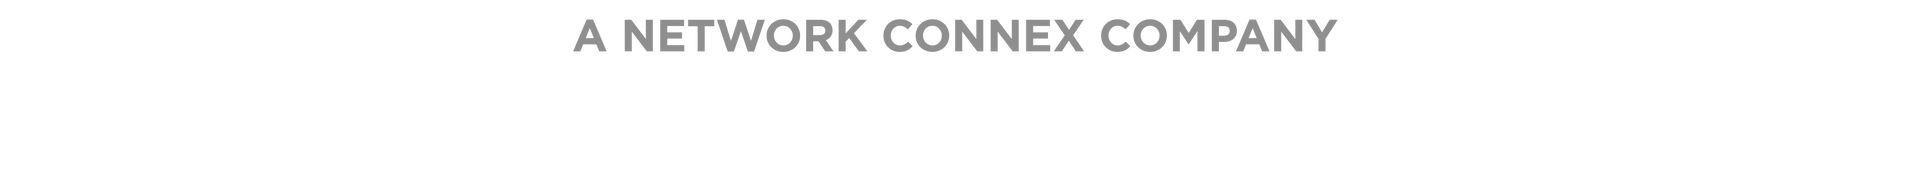 A Network Connex Company